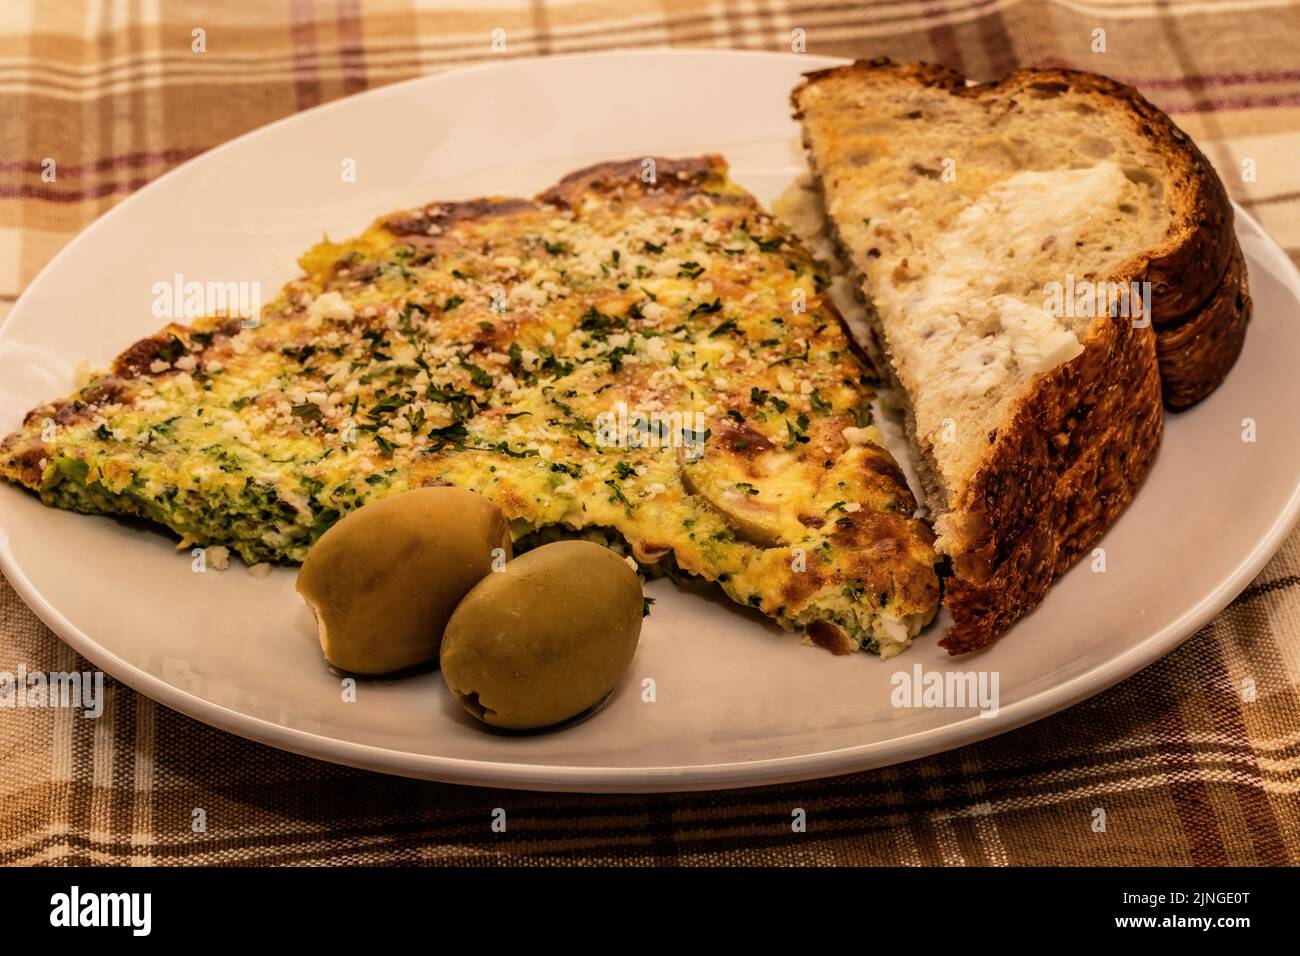 Omelette méditerranéenne au brocoli et au fromage avec olives vertes farcies au fromage Feta et pain Siebenfelder grillé. Banque D'Images